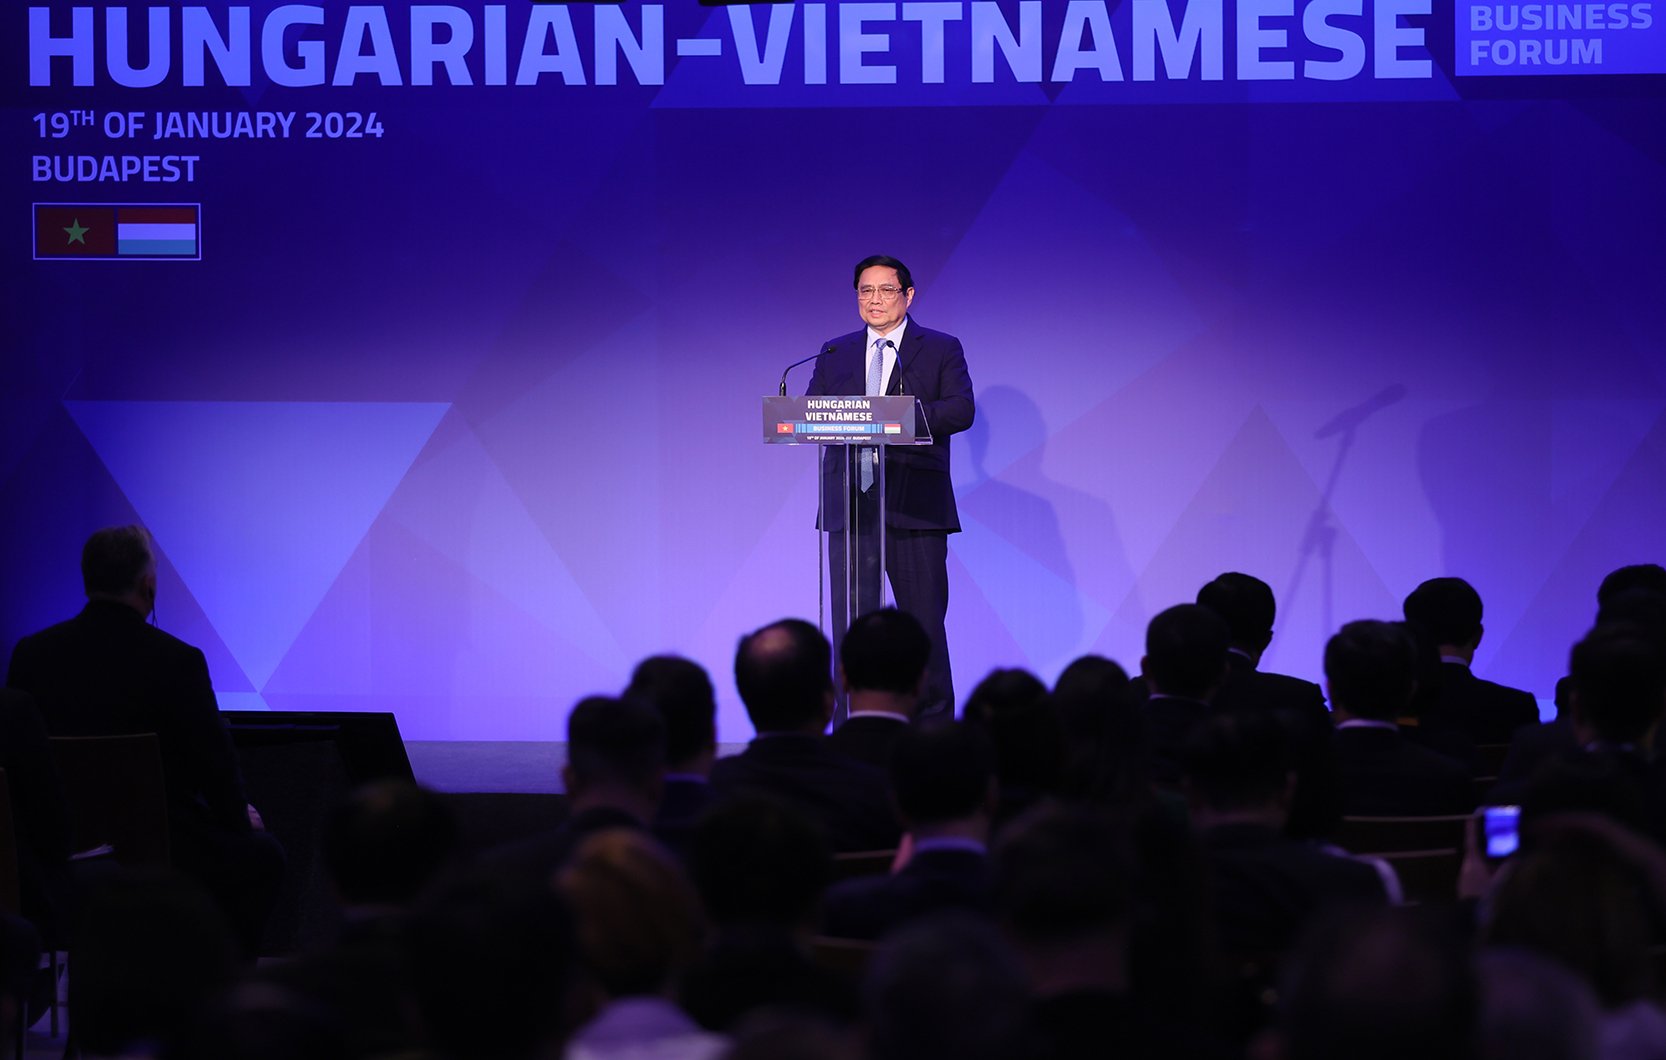 Thủ tướng mong muốn và hy vọng, vào dịp kỷ niệm 150 năm quan hệ ngoại giao Việt Nam-Hungary, mỗi nước sẽ hùng cường, thịnh vượng hơn - Ảnh: VGP/Nhật Bắc